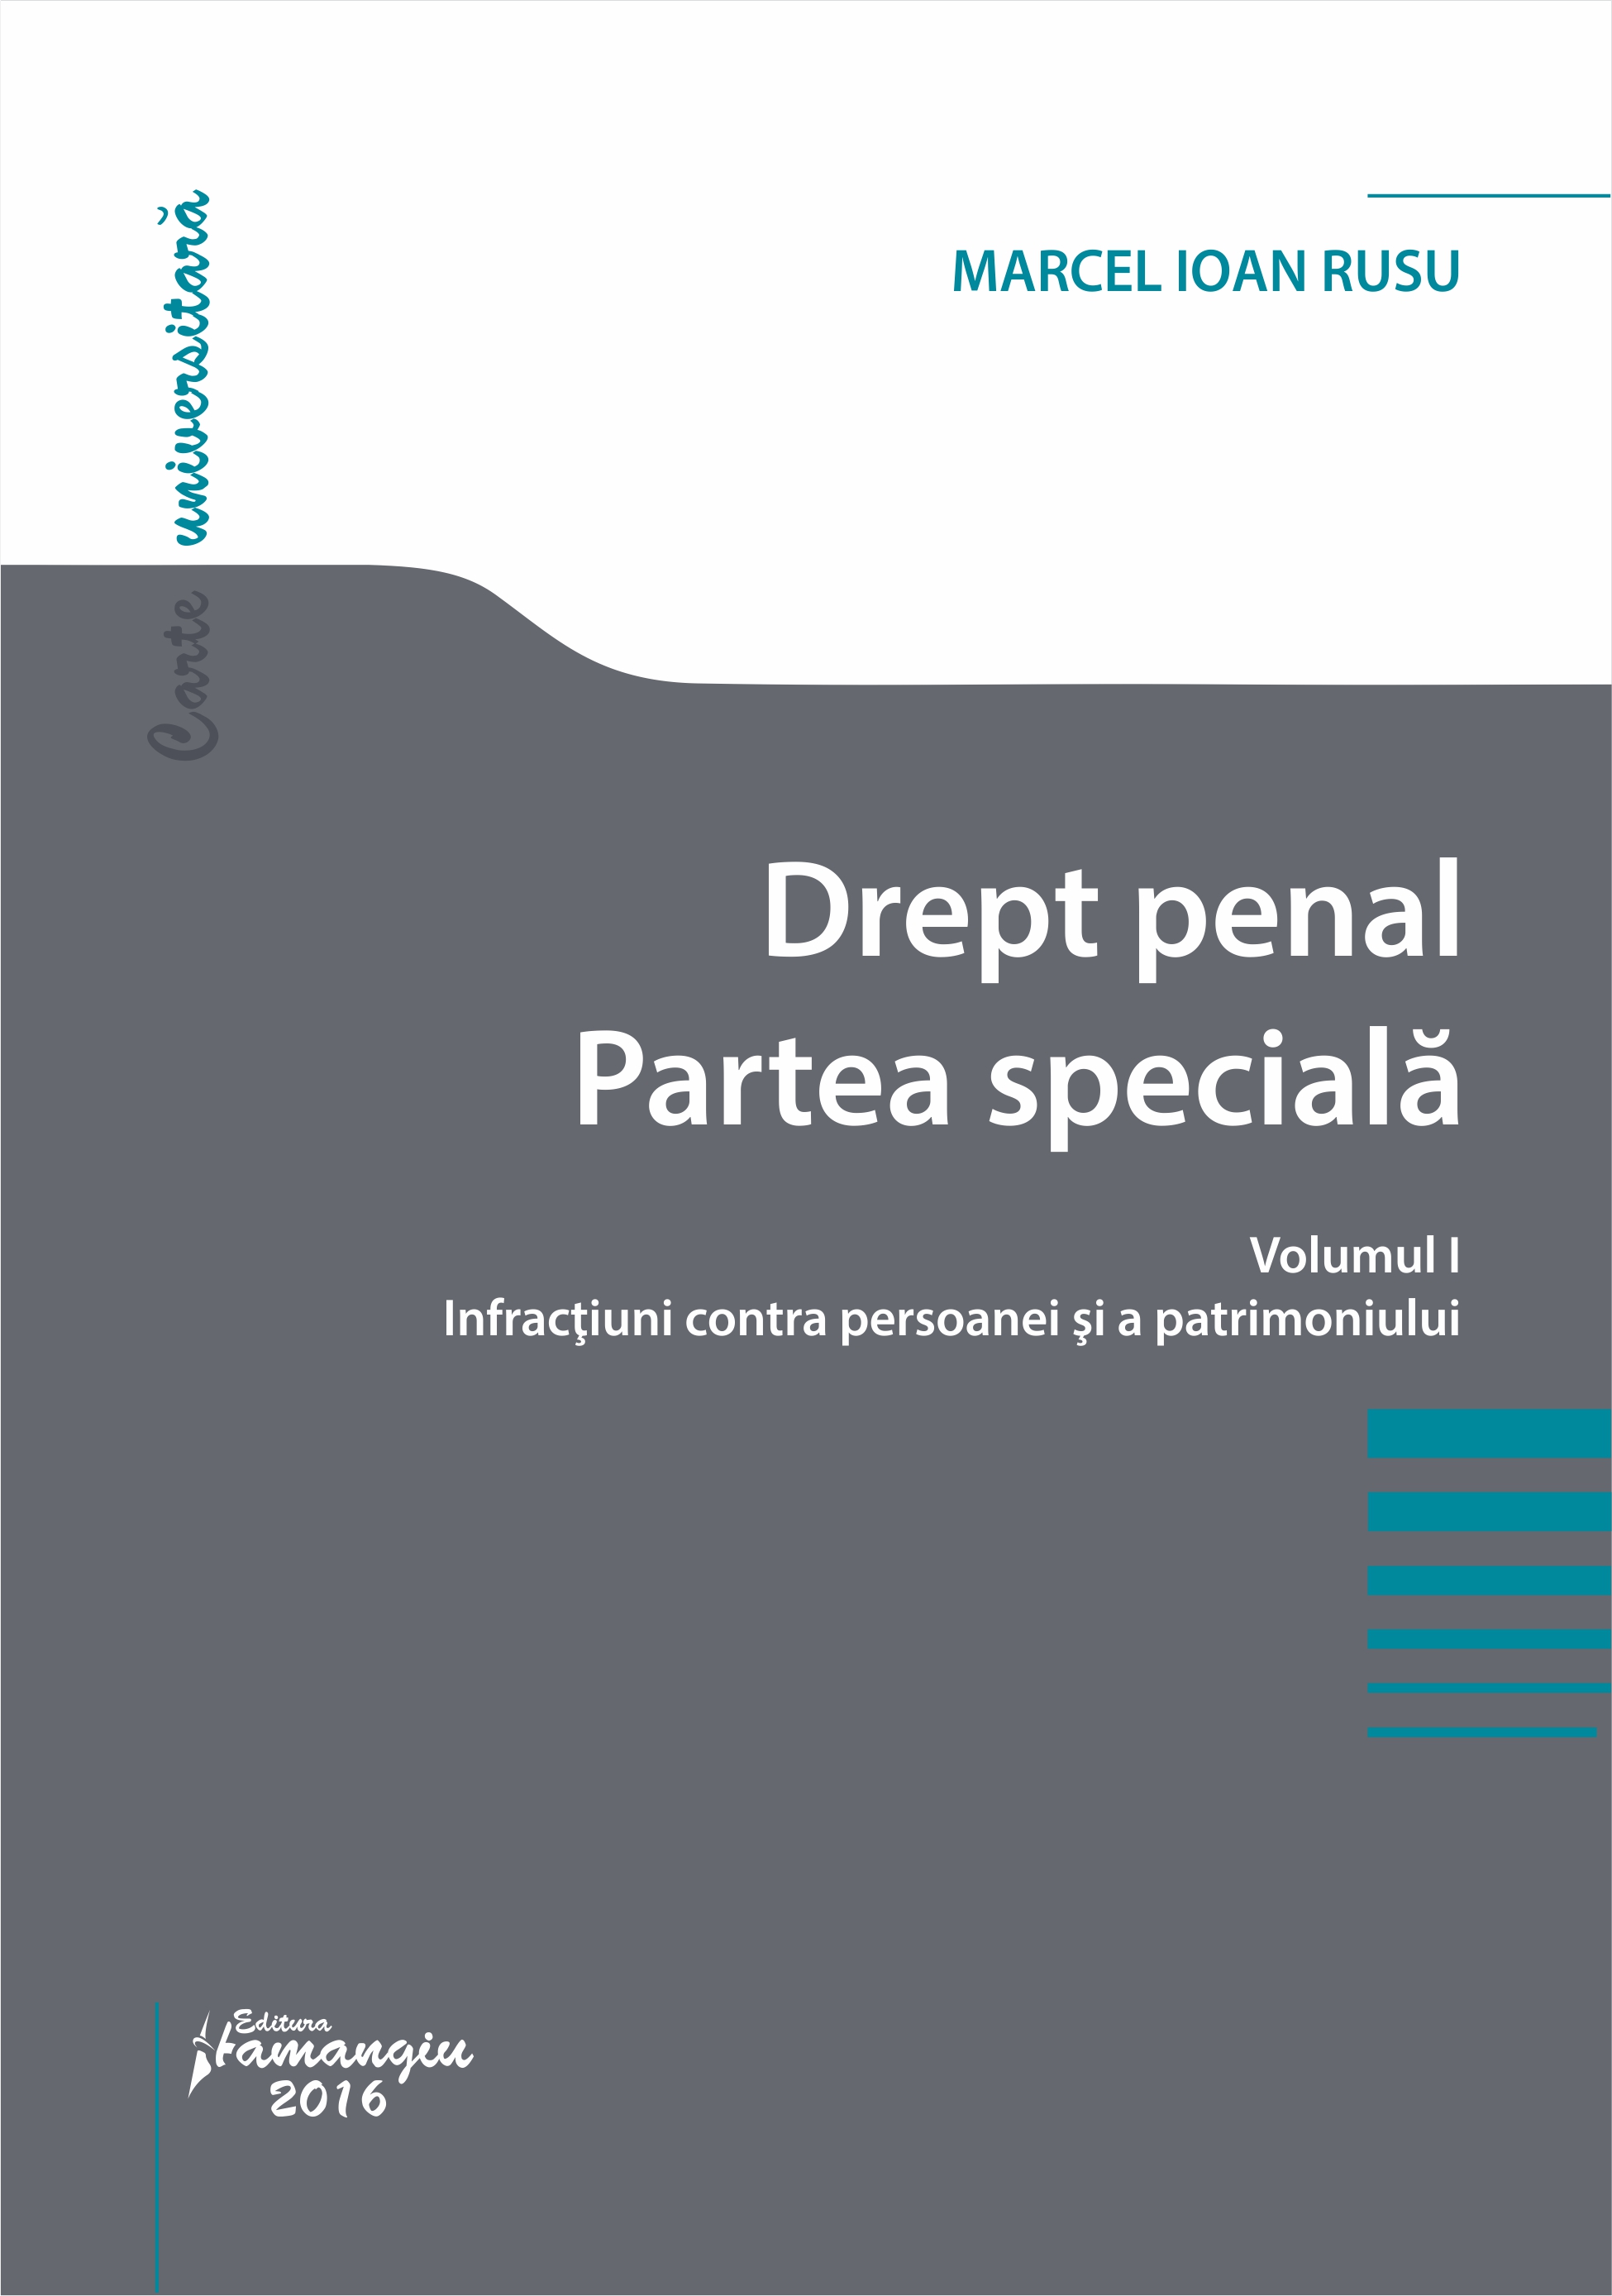 Drept penal. Partea speciala vol.1: Infractiuni contra persoanei si a patrimoniului - Marcel Ioan Rusu